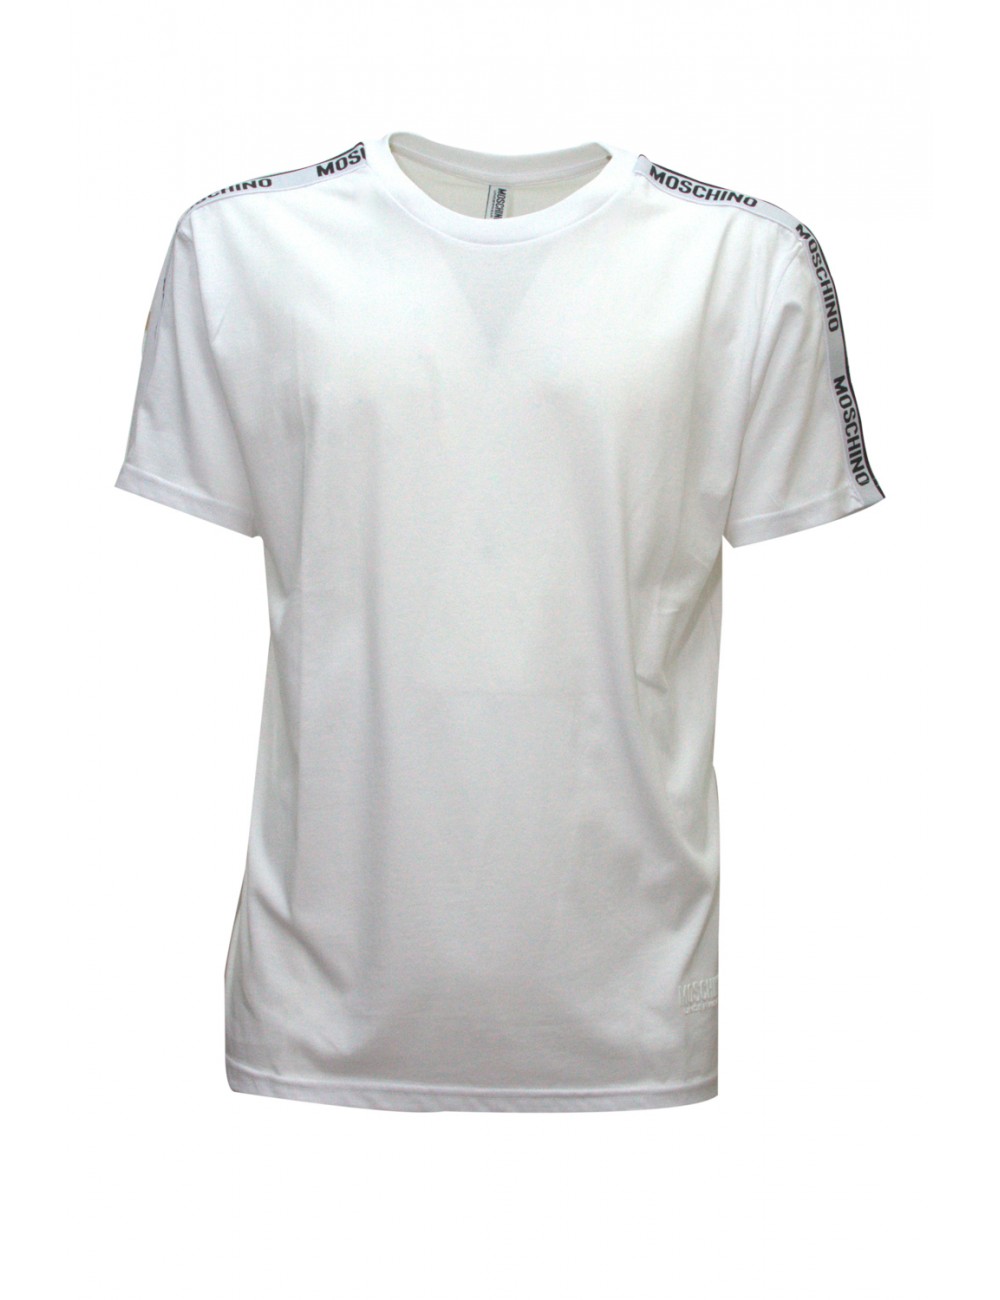 t-shirt moschino UOMO BIANCA 0001 - V1A0704 - 4304 vista frontale